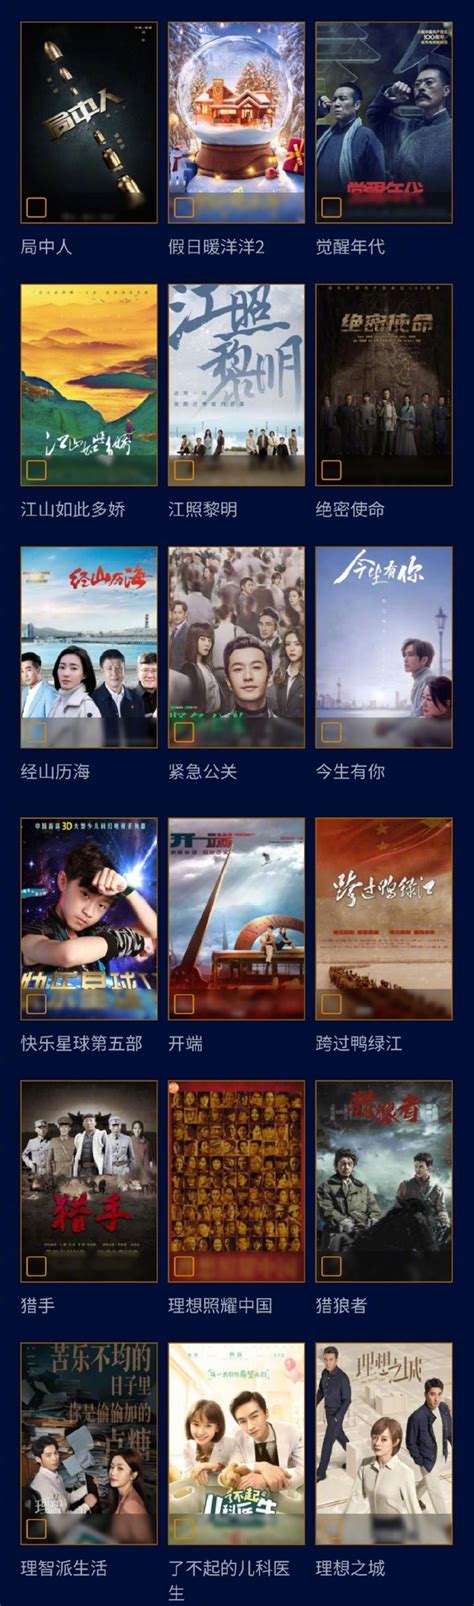 第31届中国电视金鹰奖入围名单公布 多部热剧位列其中_新浪图片